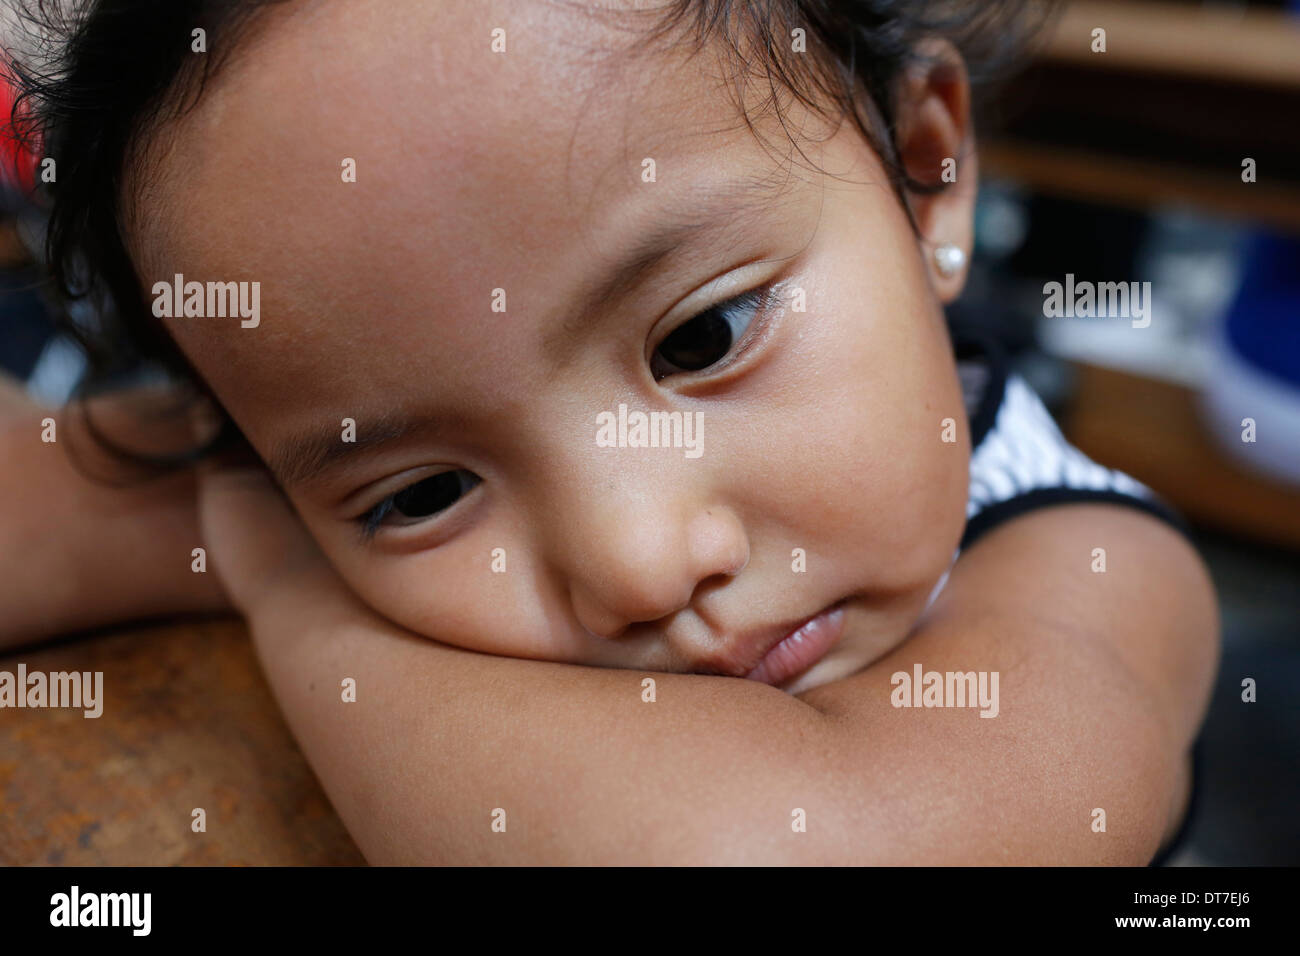 Philippina girl Stock Photo